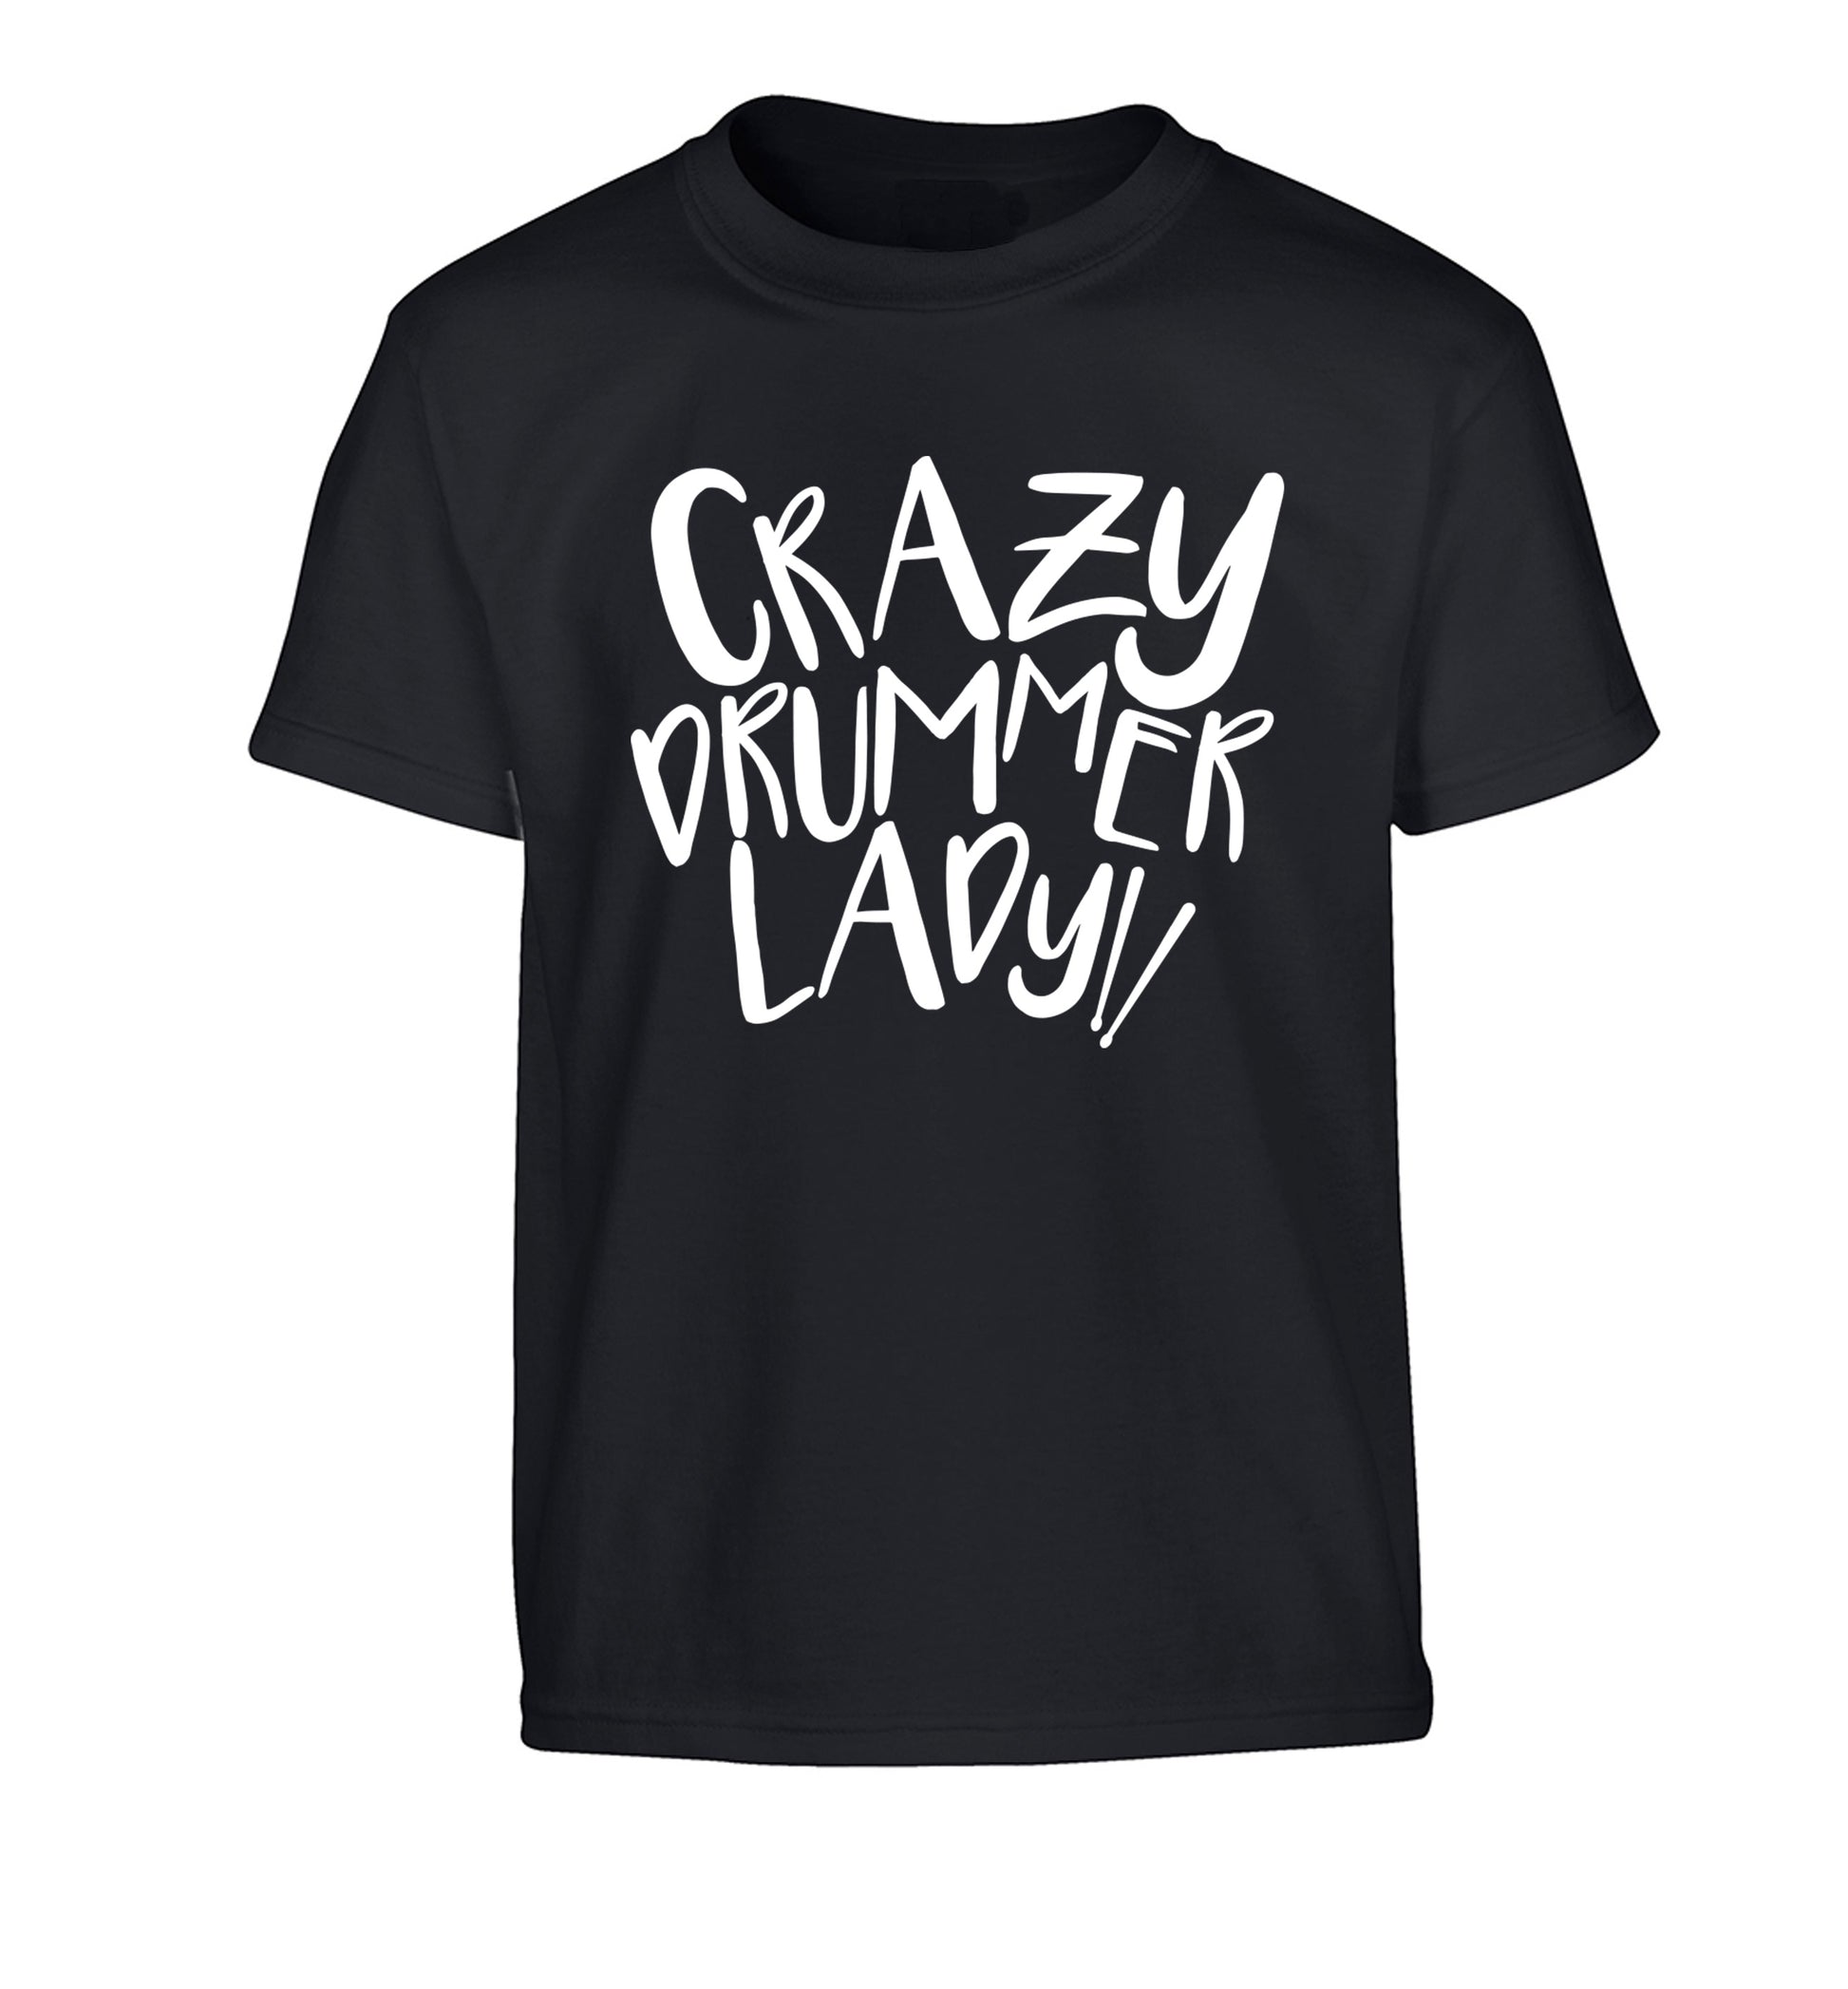 Crazy drummer lady Children's black Tshirt 12-14 Years